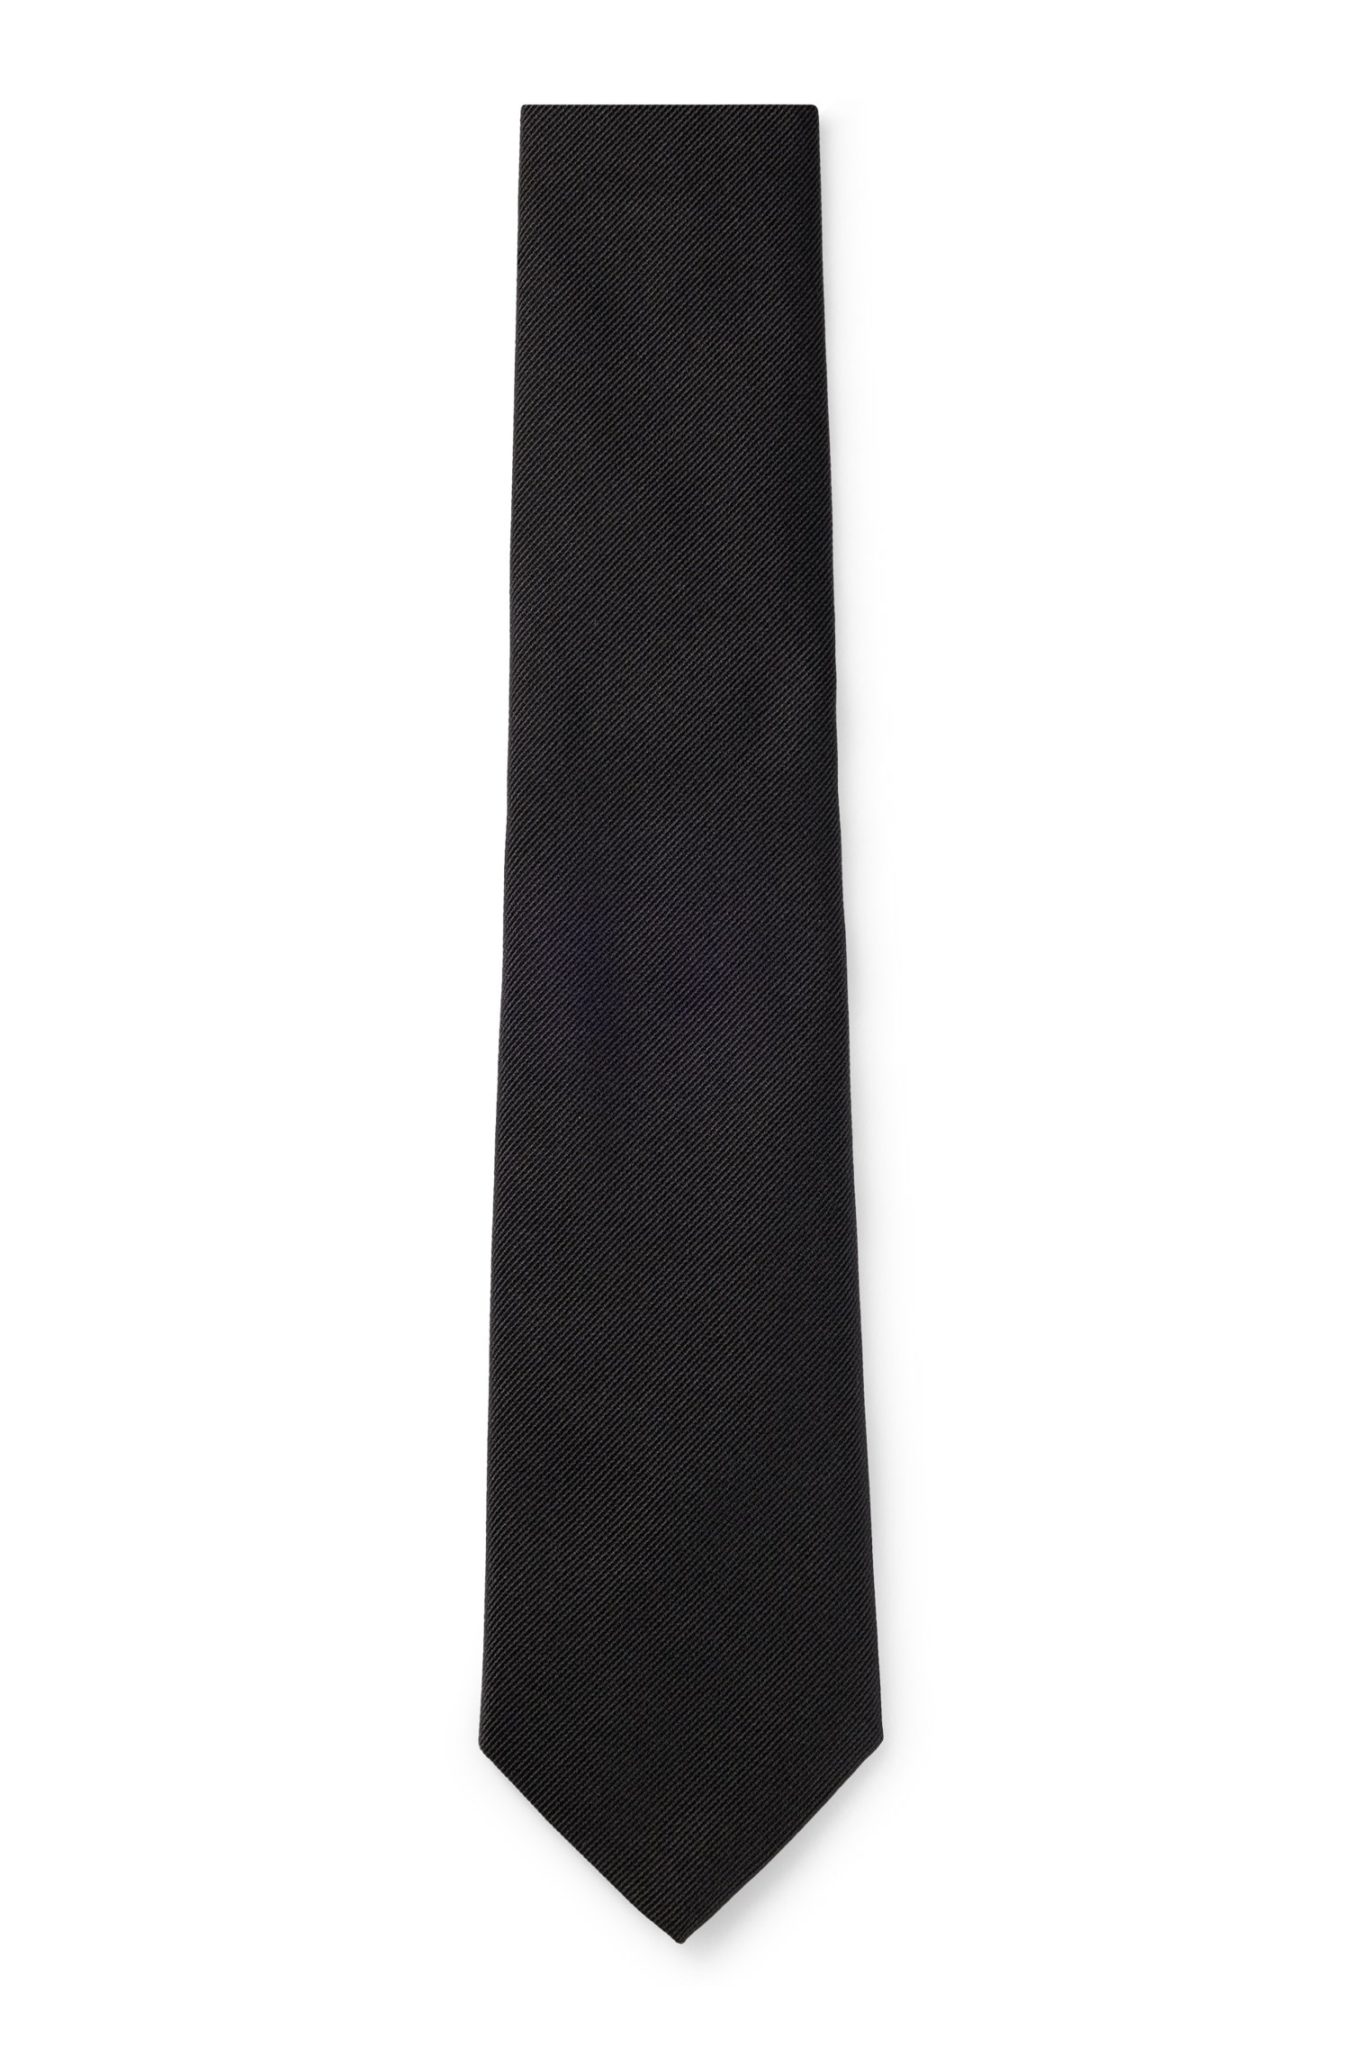 Hugo Boss Cravate habillée en jacquard de soie